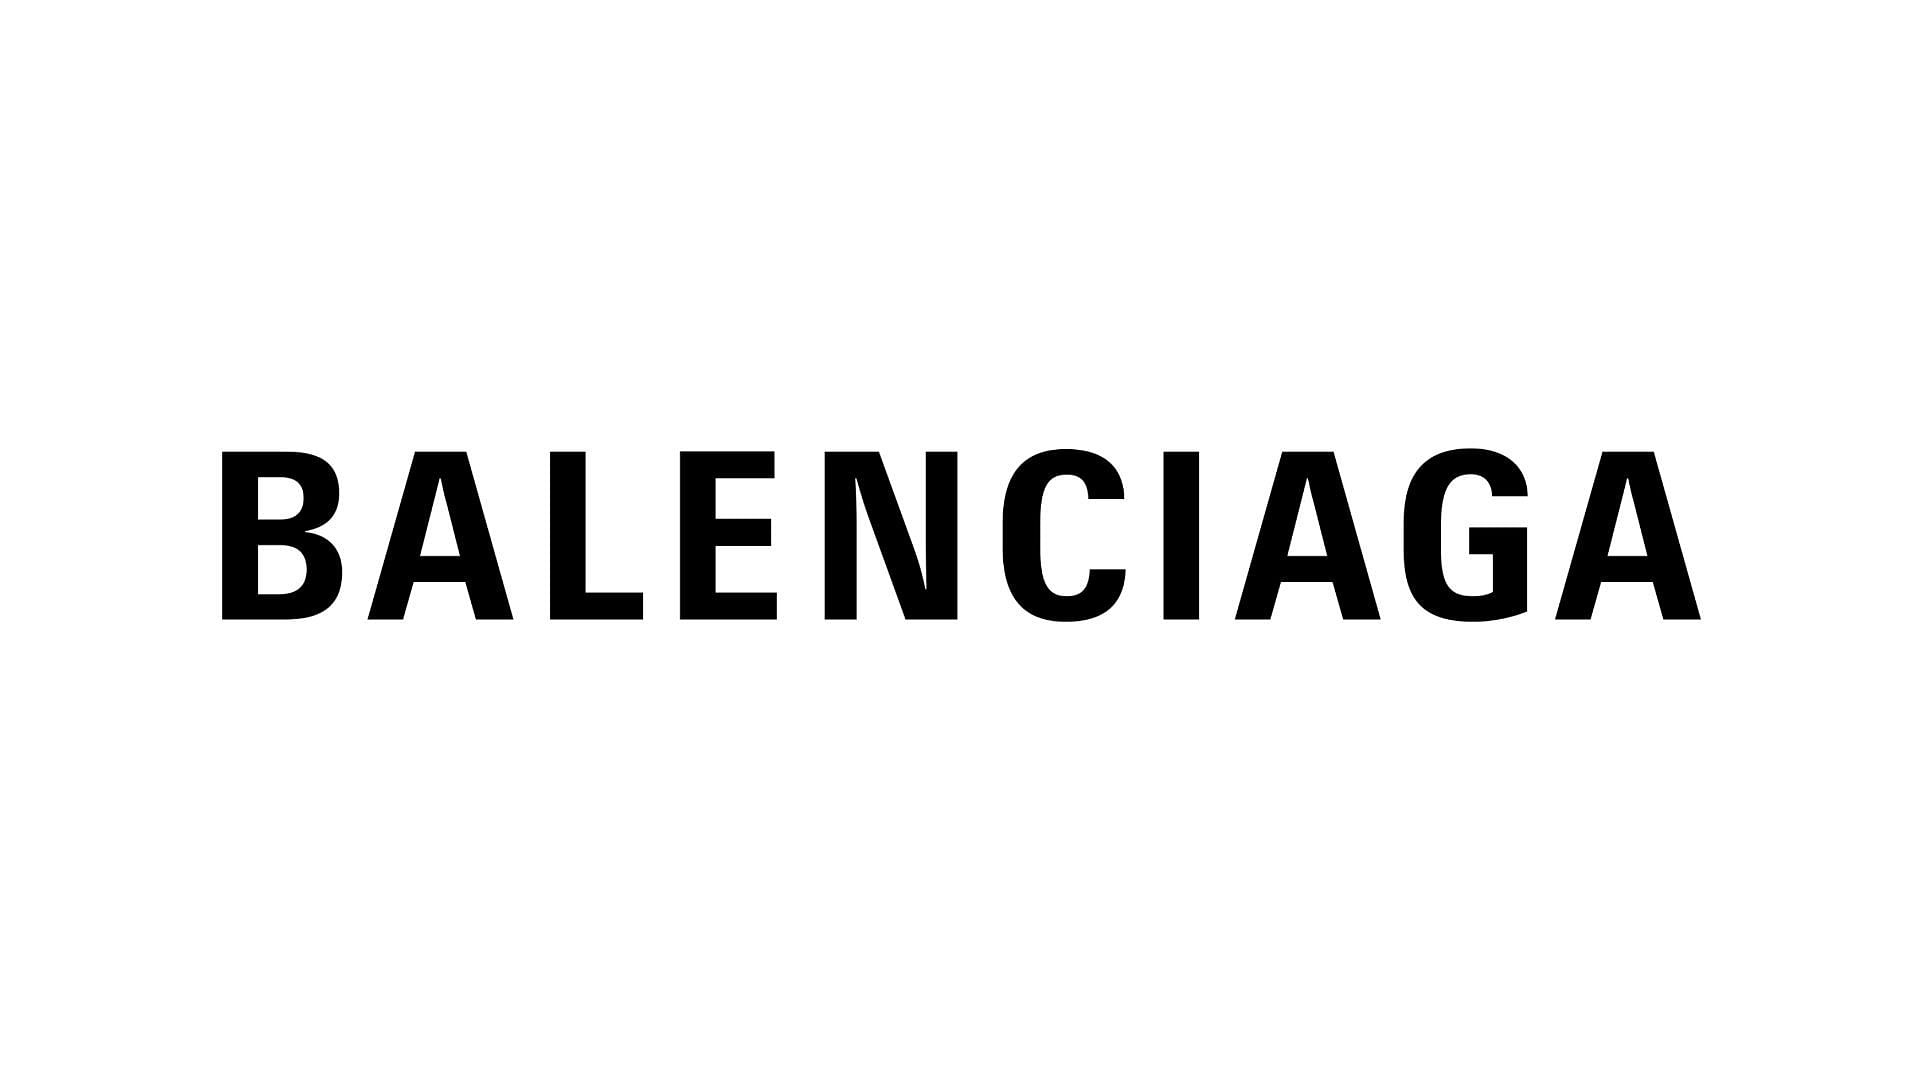 Who owns Balenciaga  FourWeekMBA